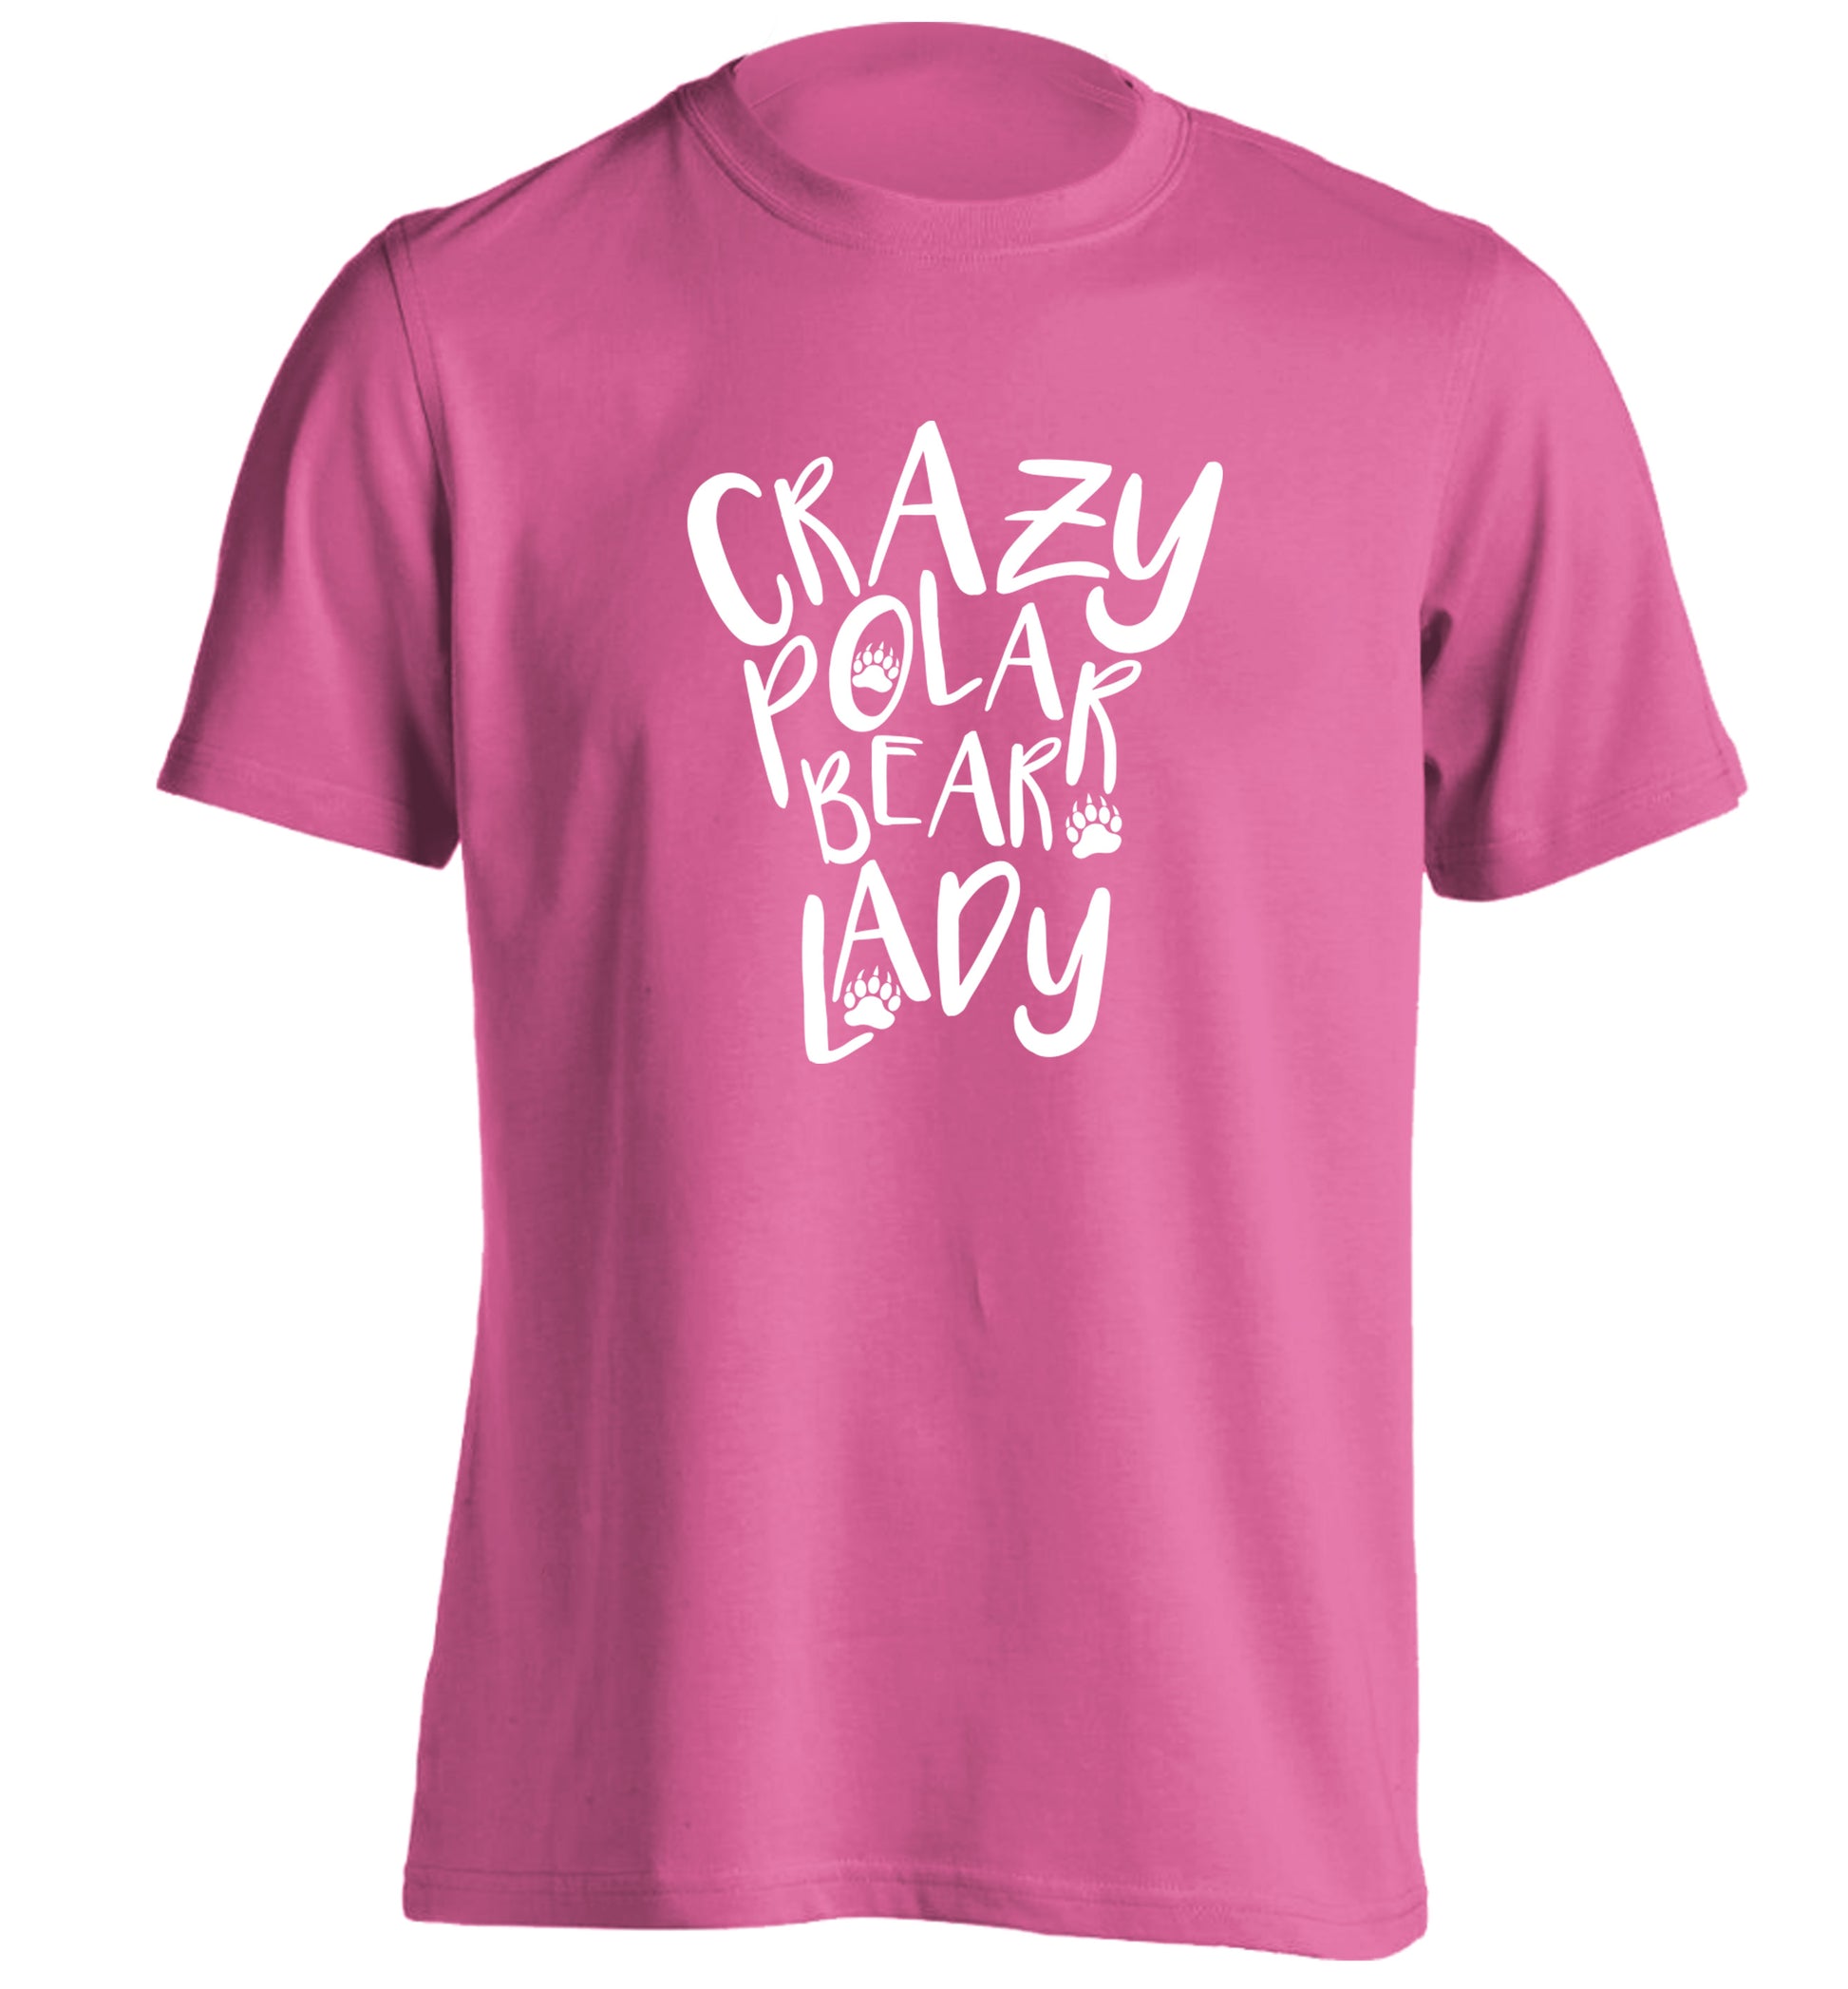 Crazy polar bear lady adults unisex pink Tshirt 2XL